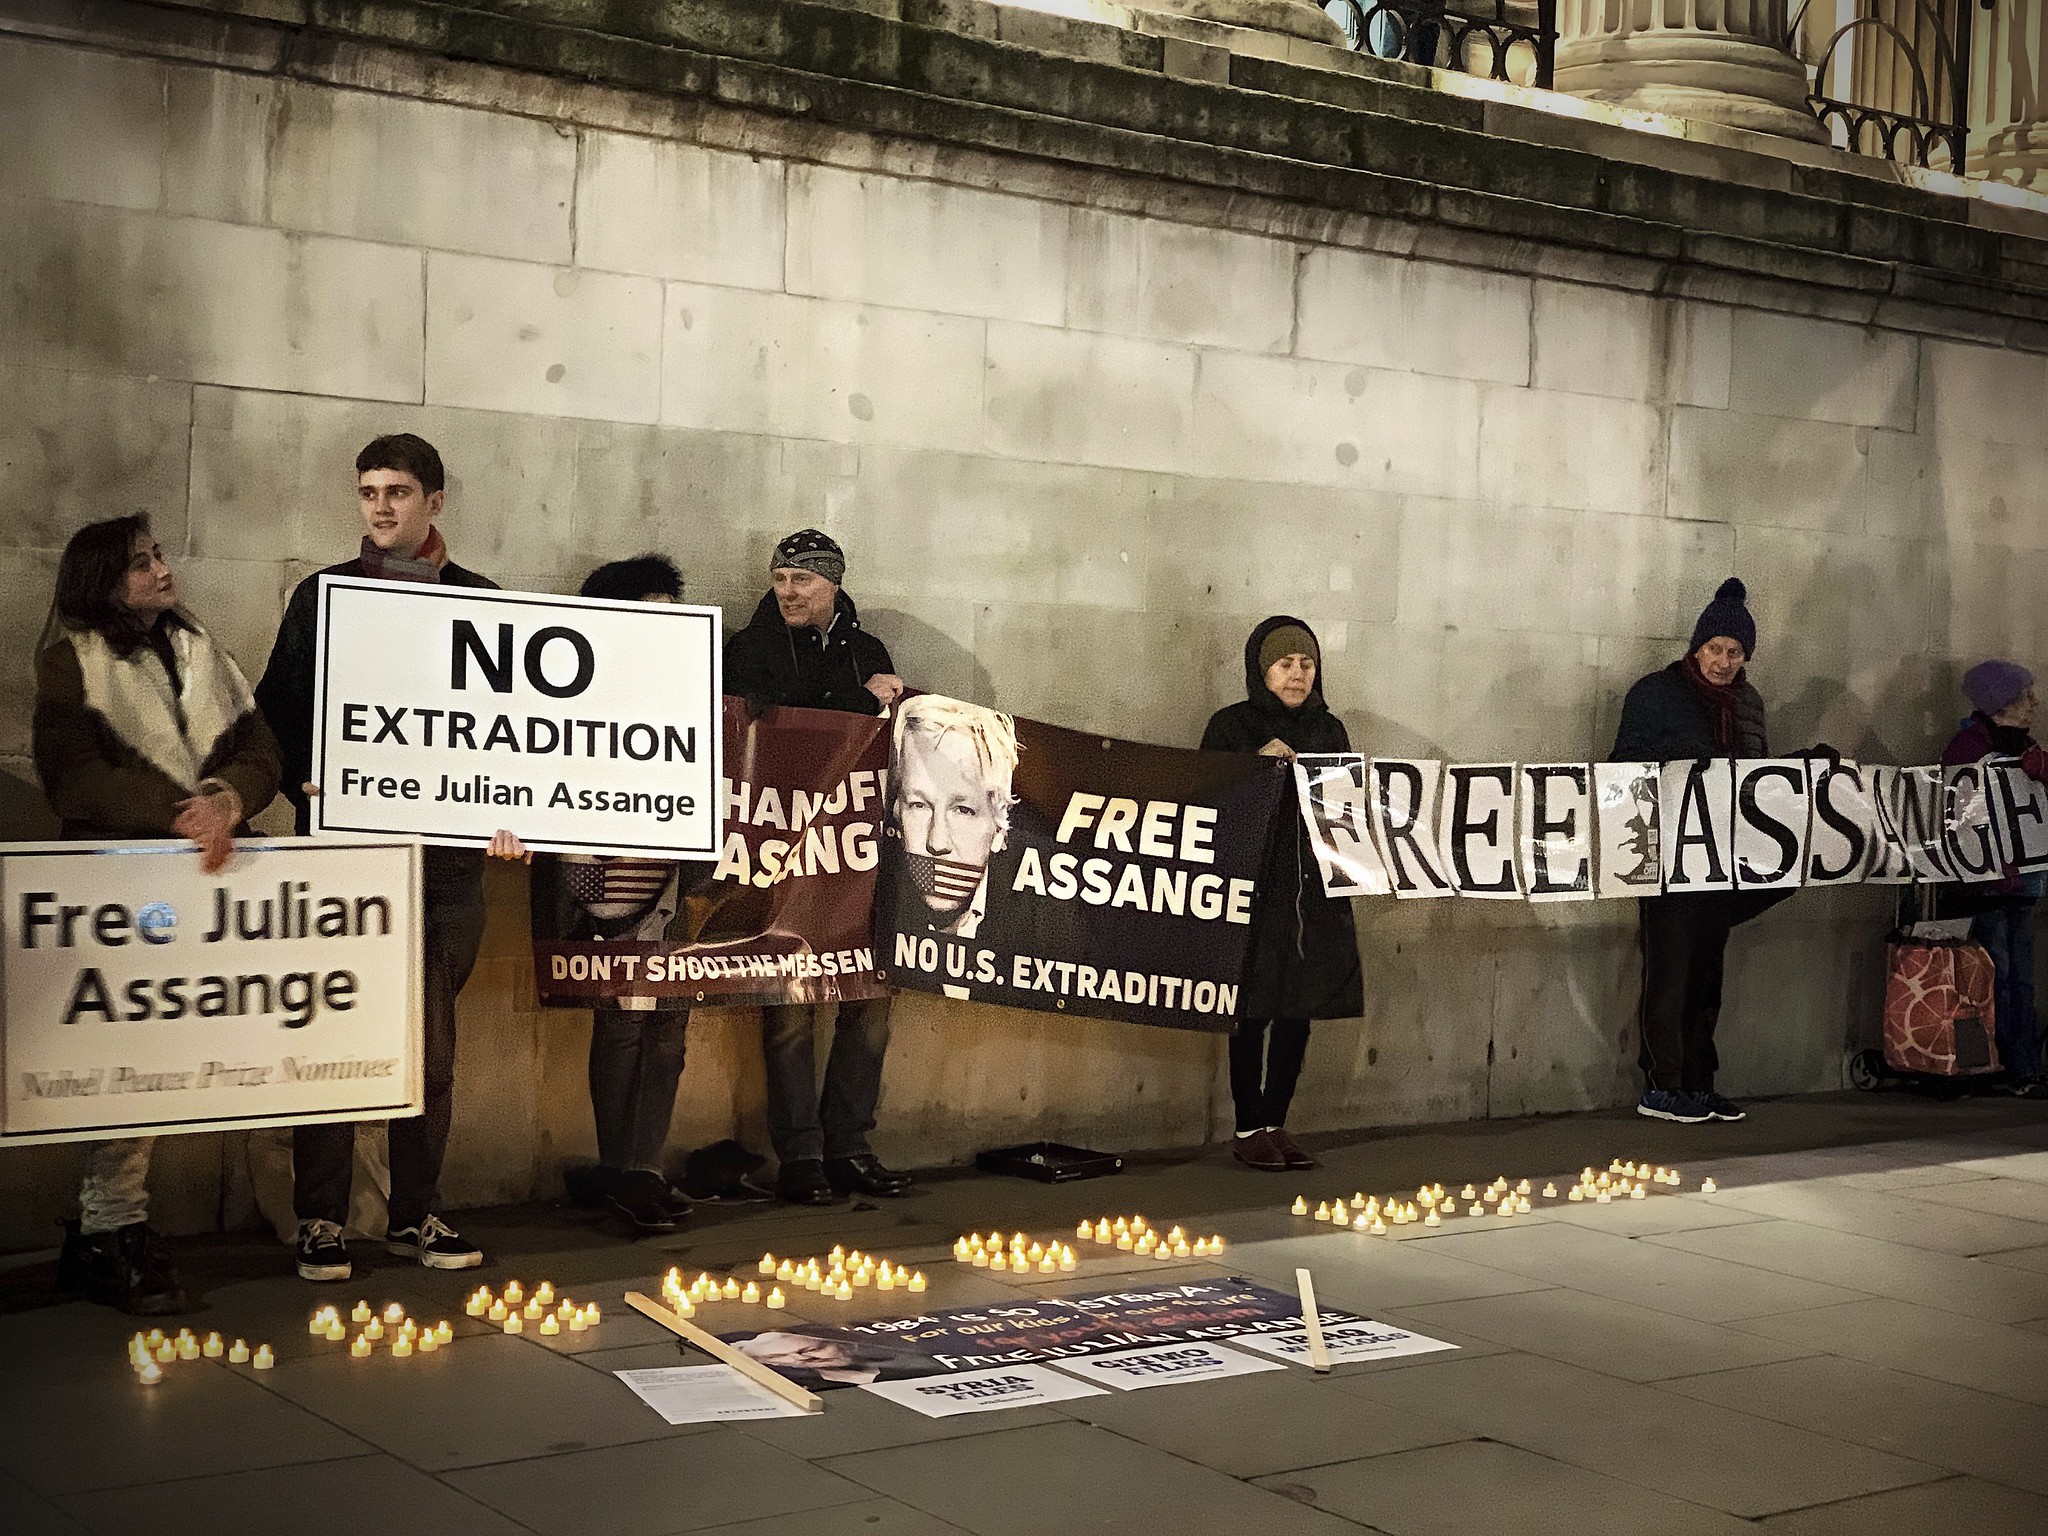 Manifestación por la liberación de Julian Assange en Trafalgar Square, Londres, en enero de 2020. Foto: Flickr / Garry Knight